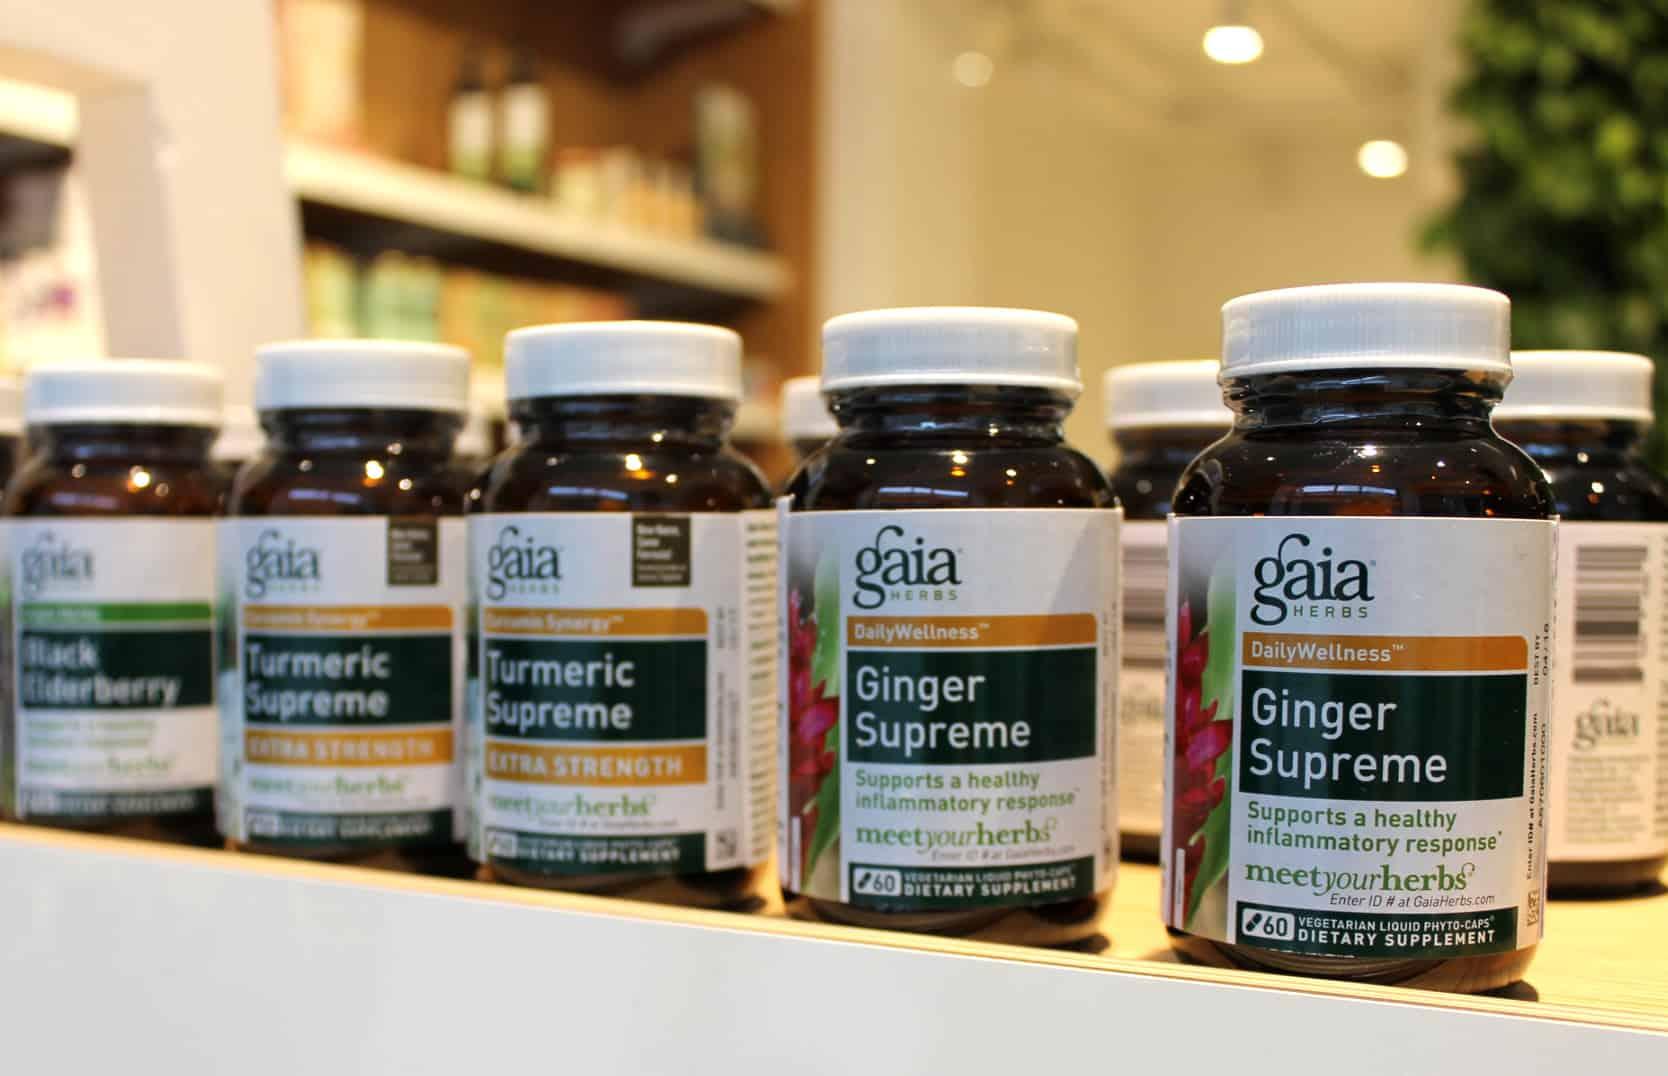 Gaia-Herbs-PUR-kauppa